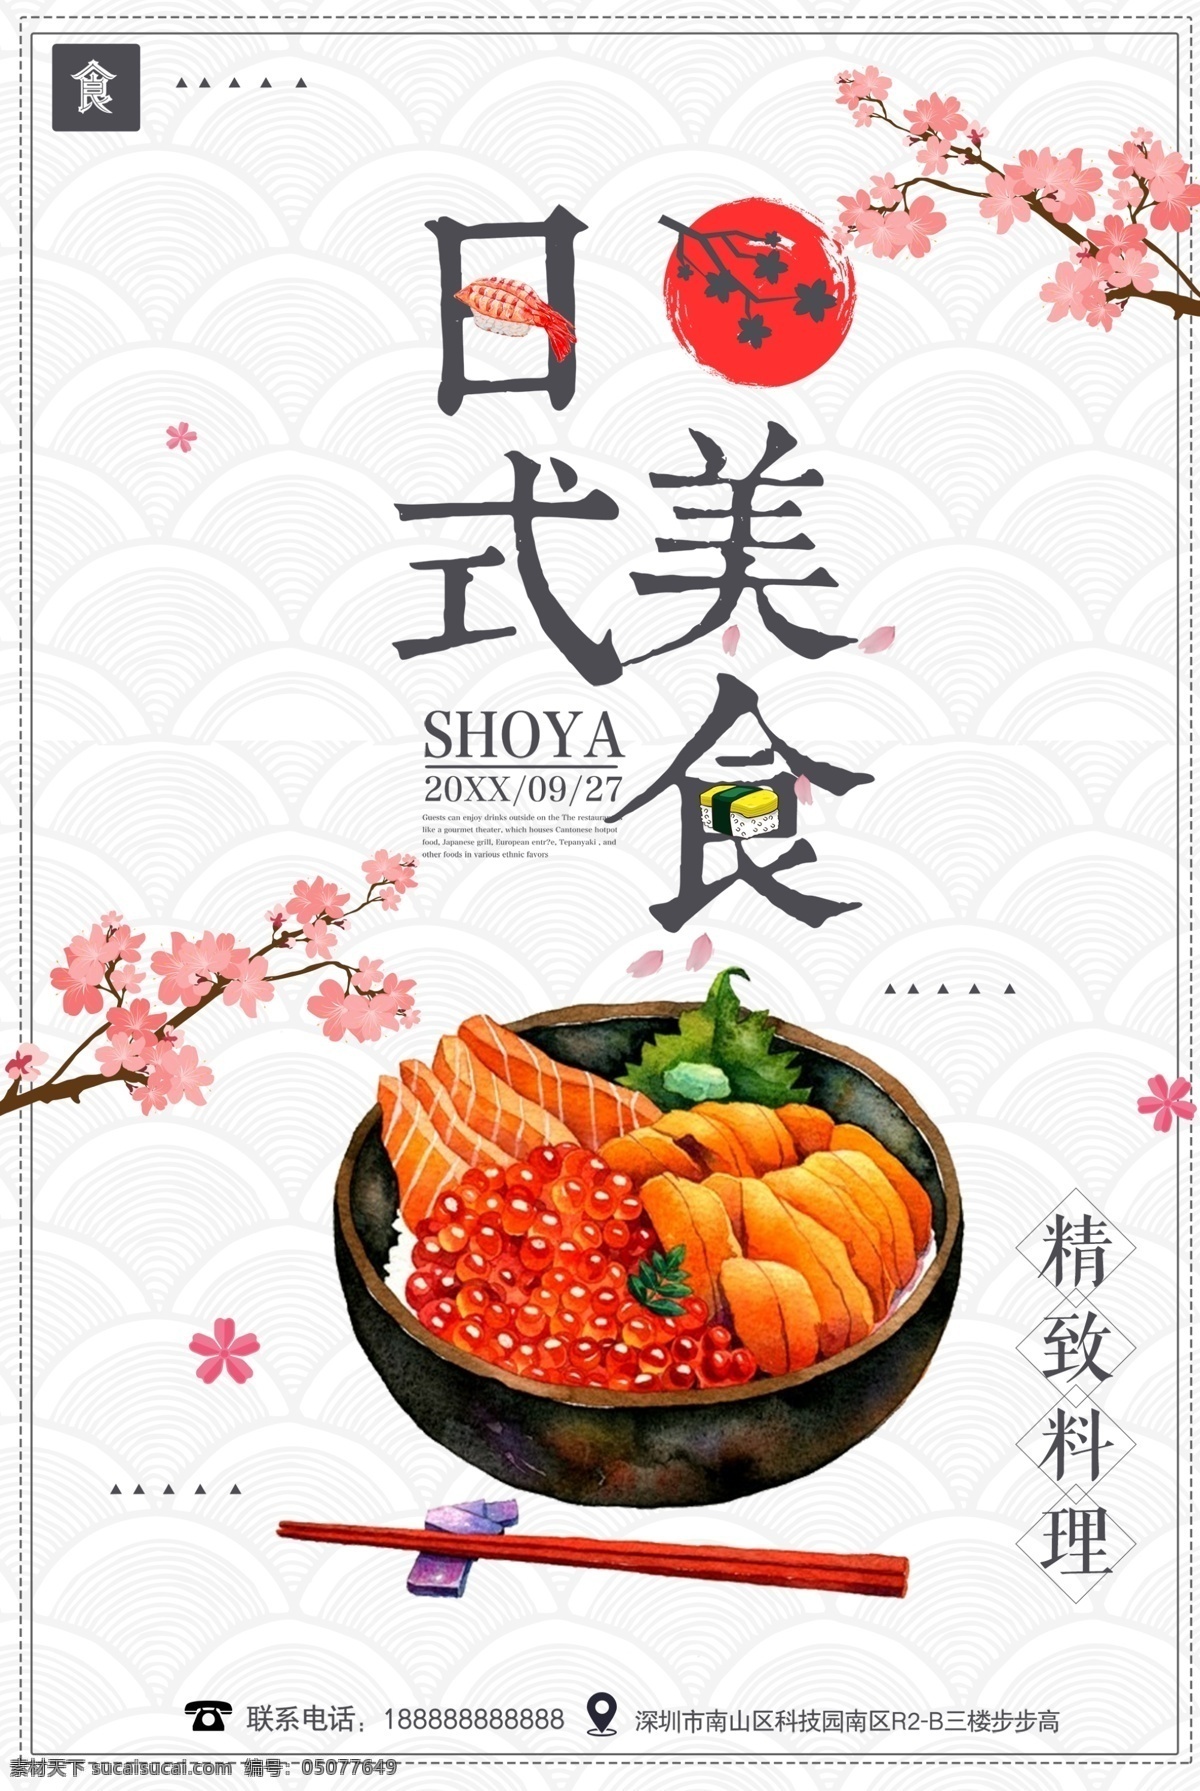 日系美食 日系没事 美食 饮食 餐饮 餐饮海报 寿司 寿司海报 日本料理 海报类单页类